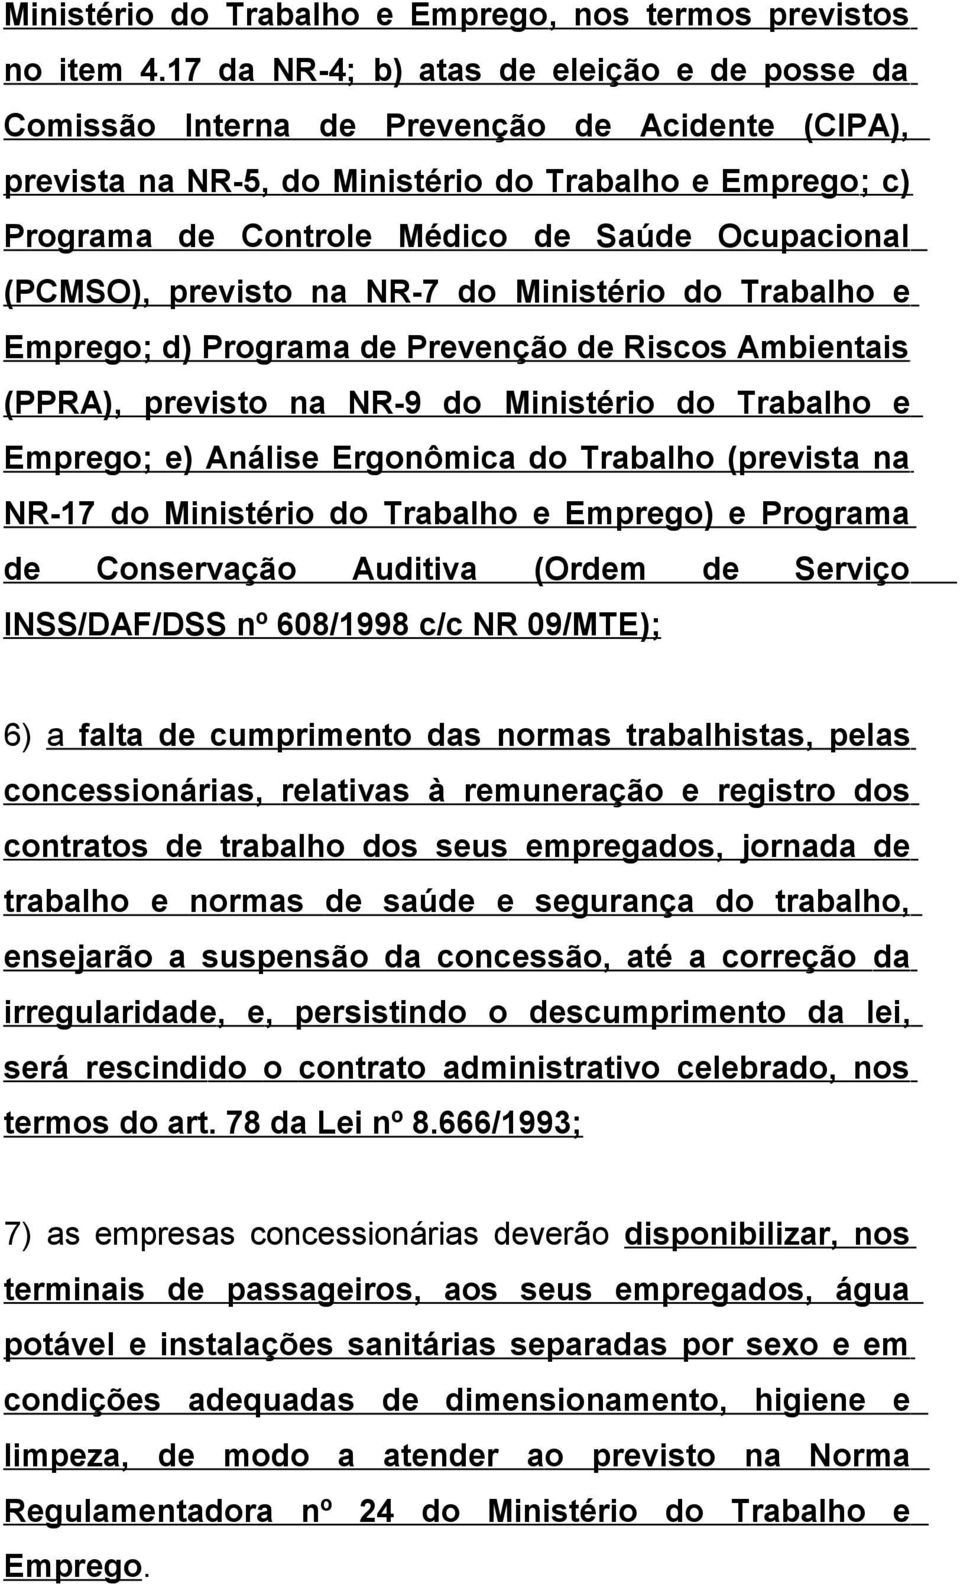 Ocupacional (PCMSO), previsto na NR-7 do Ministério do Trabalho e Emprego; d) Programa de Prevenção de Riscos Ambientais (PPRA), previsto na NR-9 do Ministério do Trabalho e Emprego; e) Análise